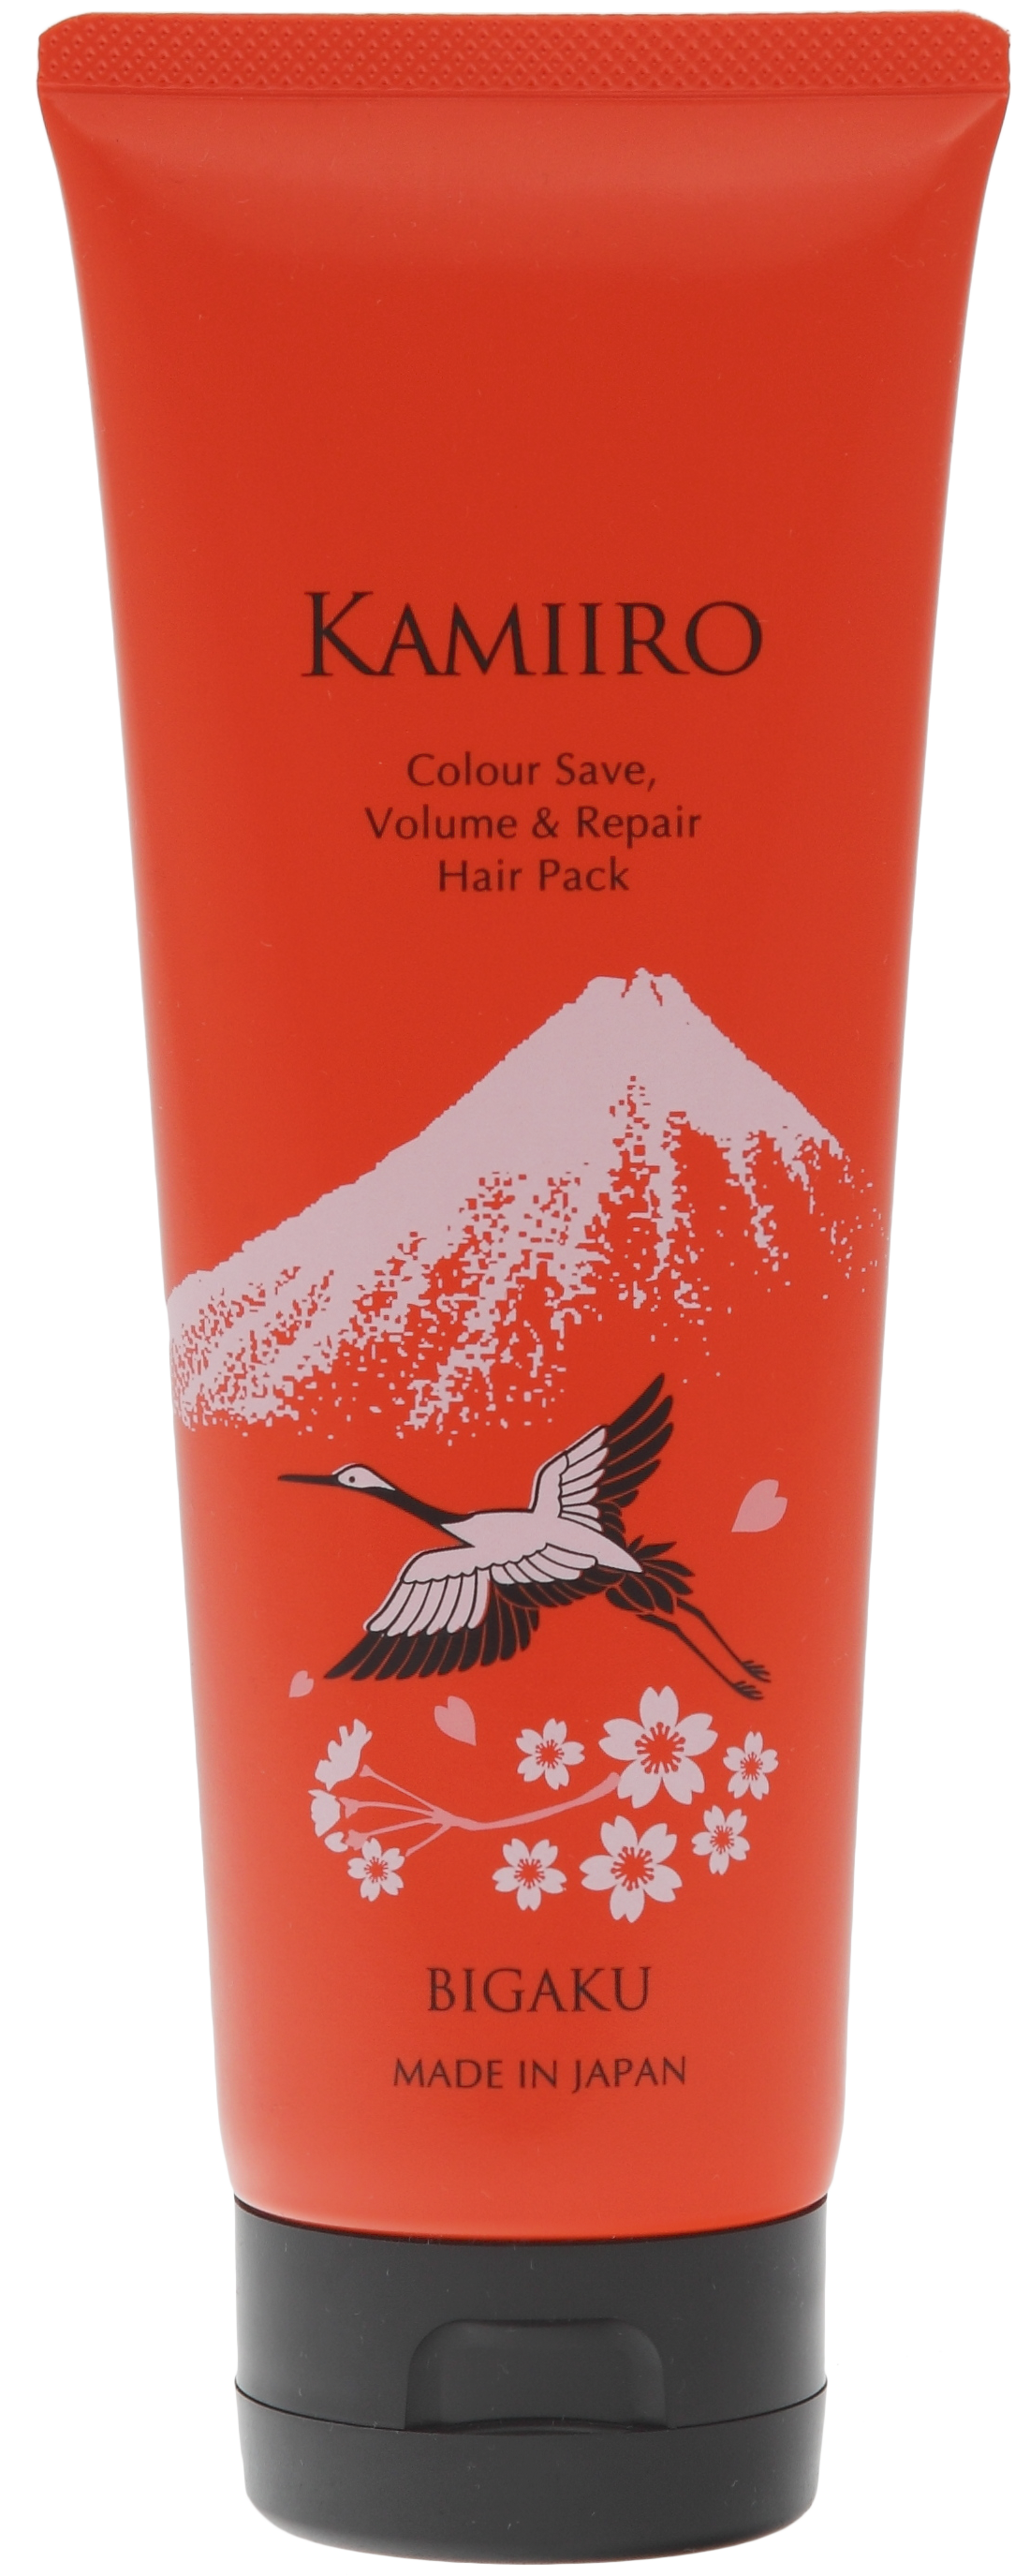 Kamiiro Colour Save Volume&Repair маска для объема и поддержания цвета волос, 250г